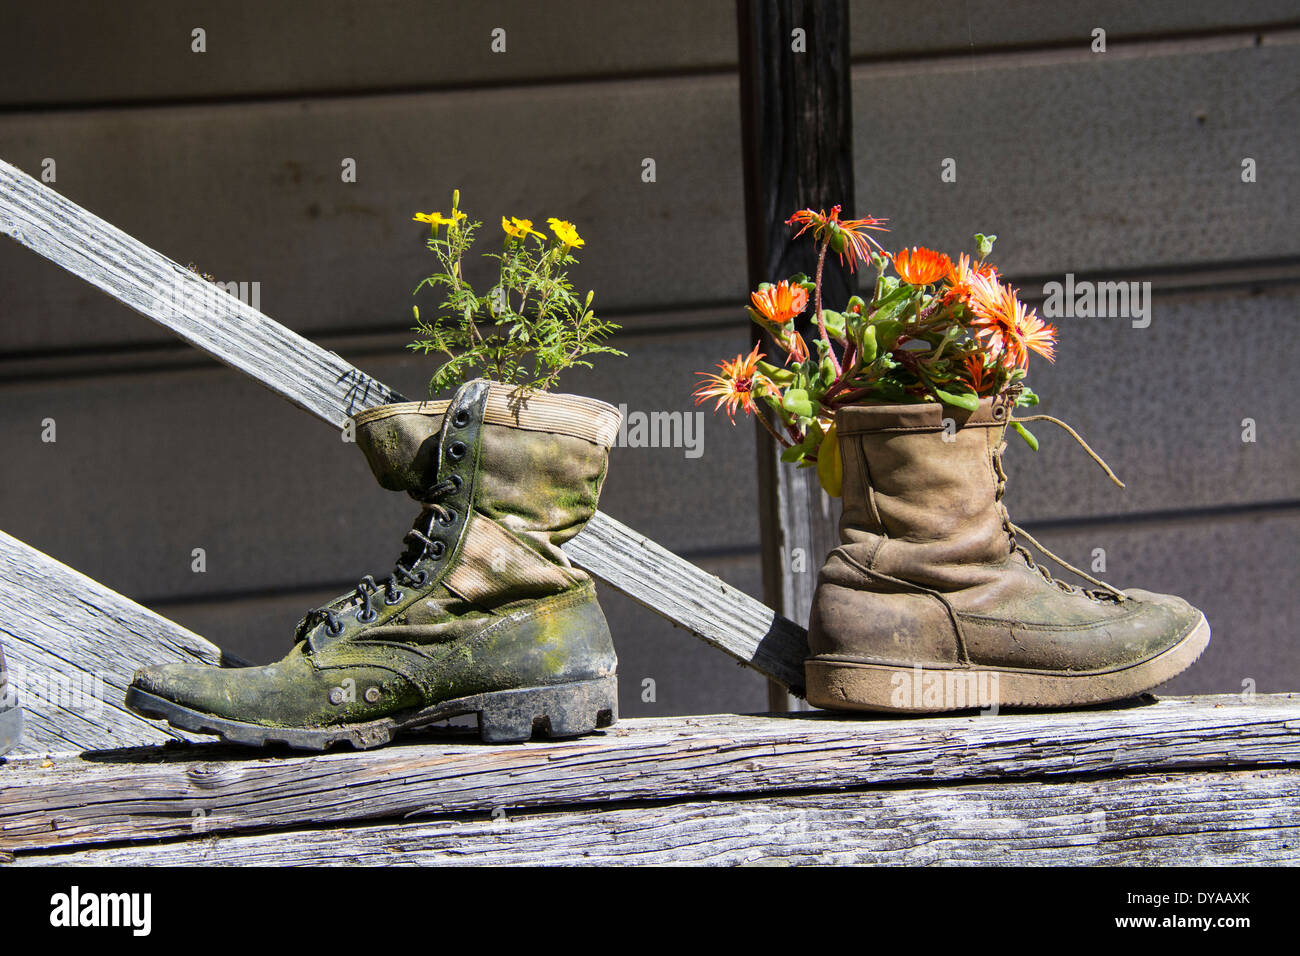 Zwei alte Stiefel als malerisch und ungewöhnliche Blumentöpfe verwendet. Upcycling, Upcycled, Upcycle oder Recycling im Garten. Stockfoto